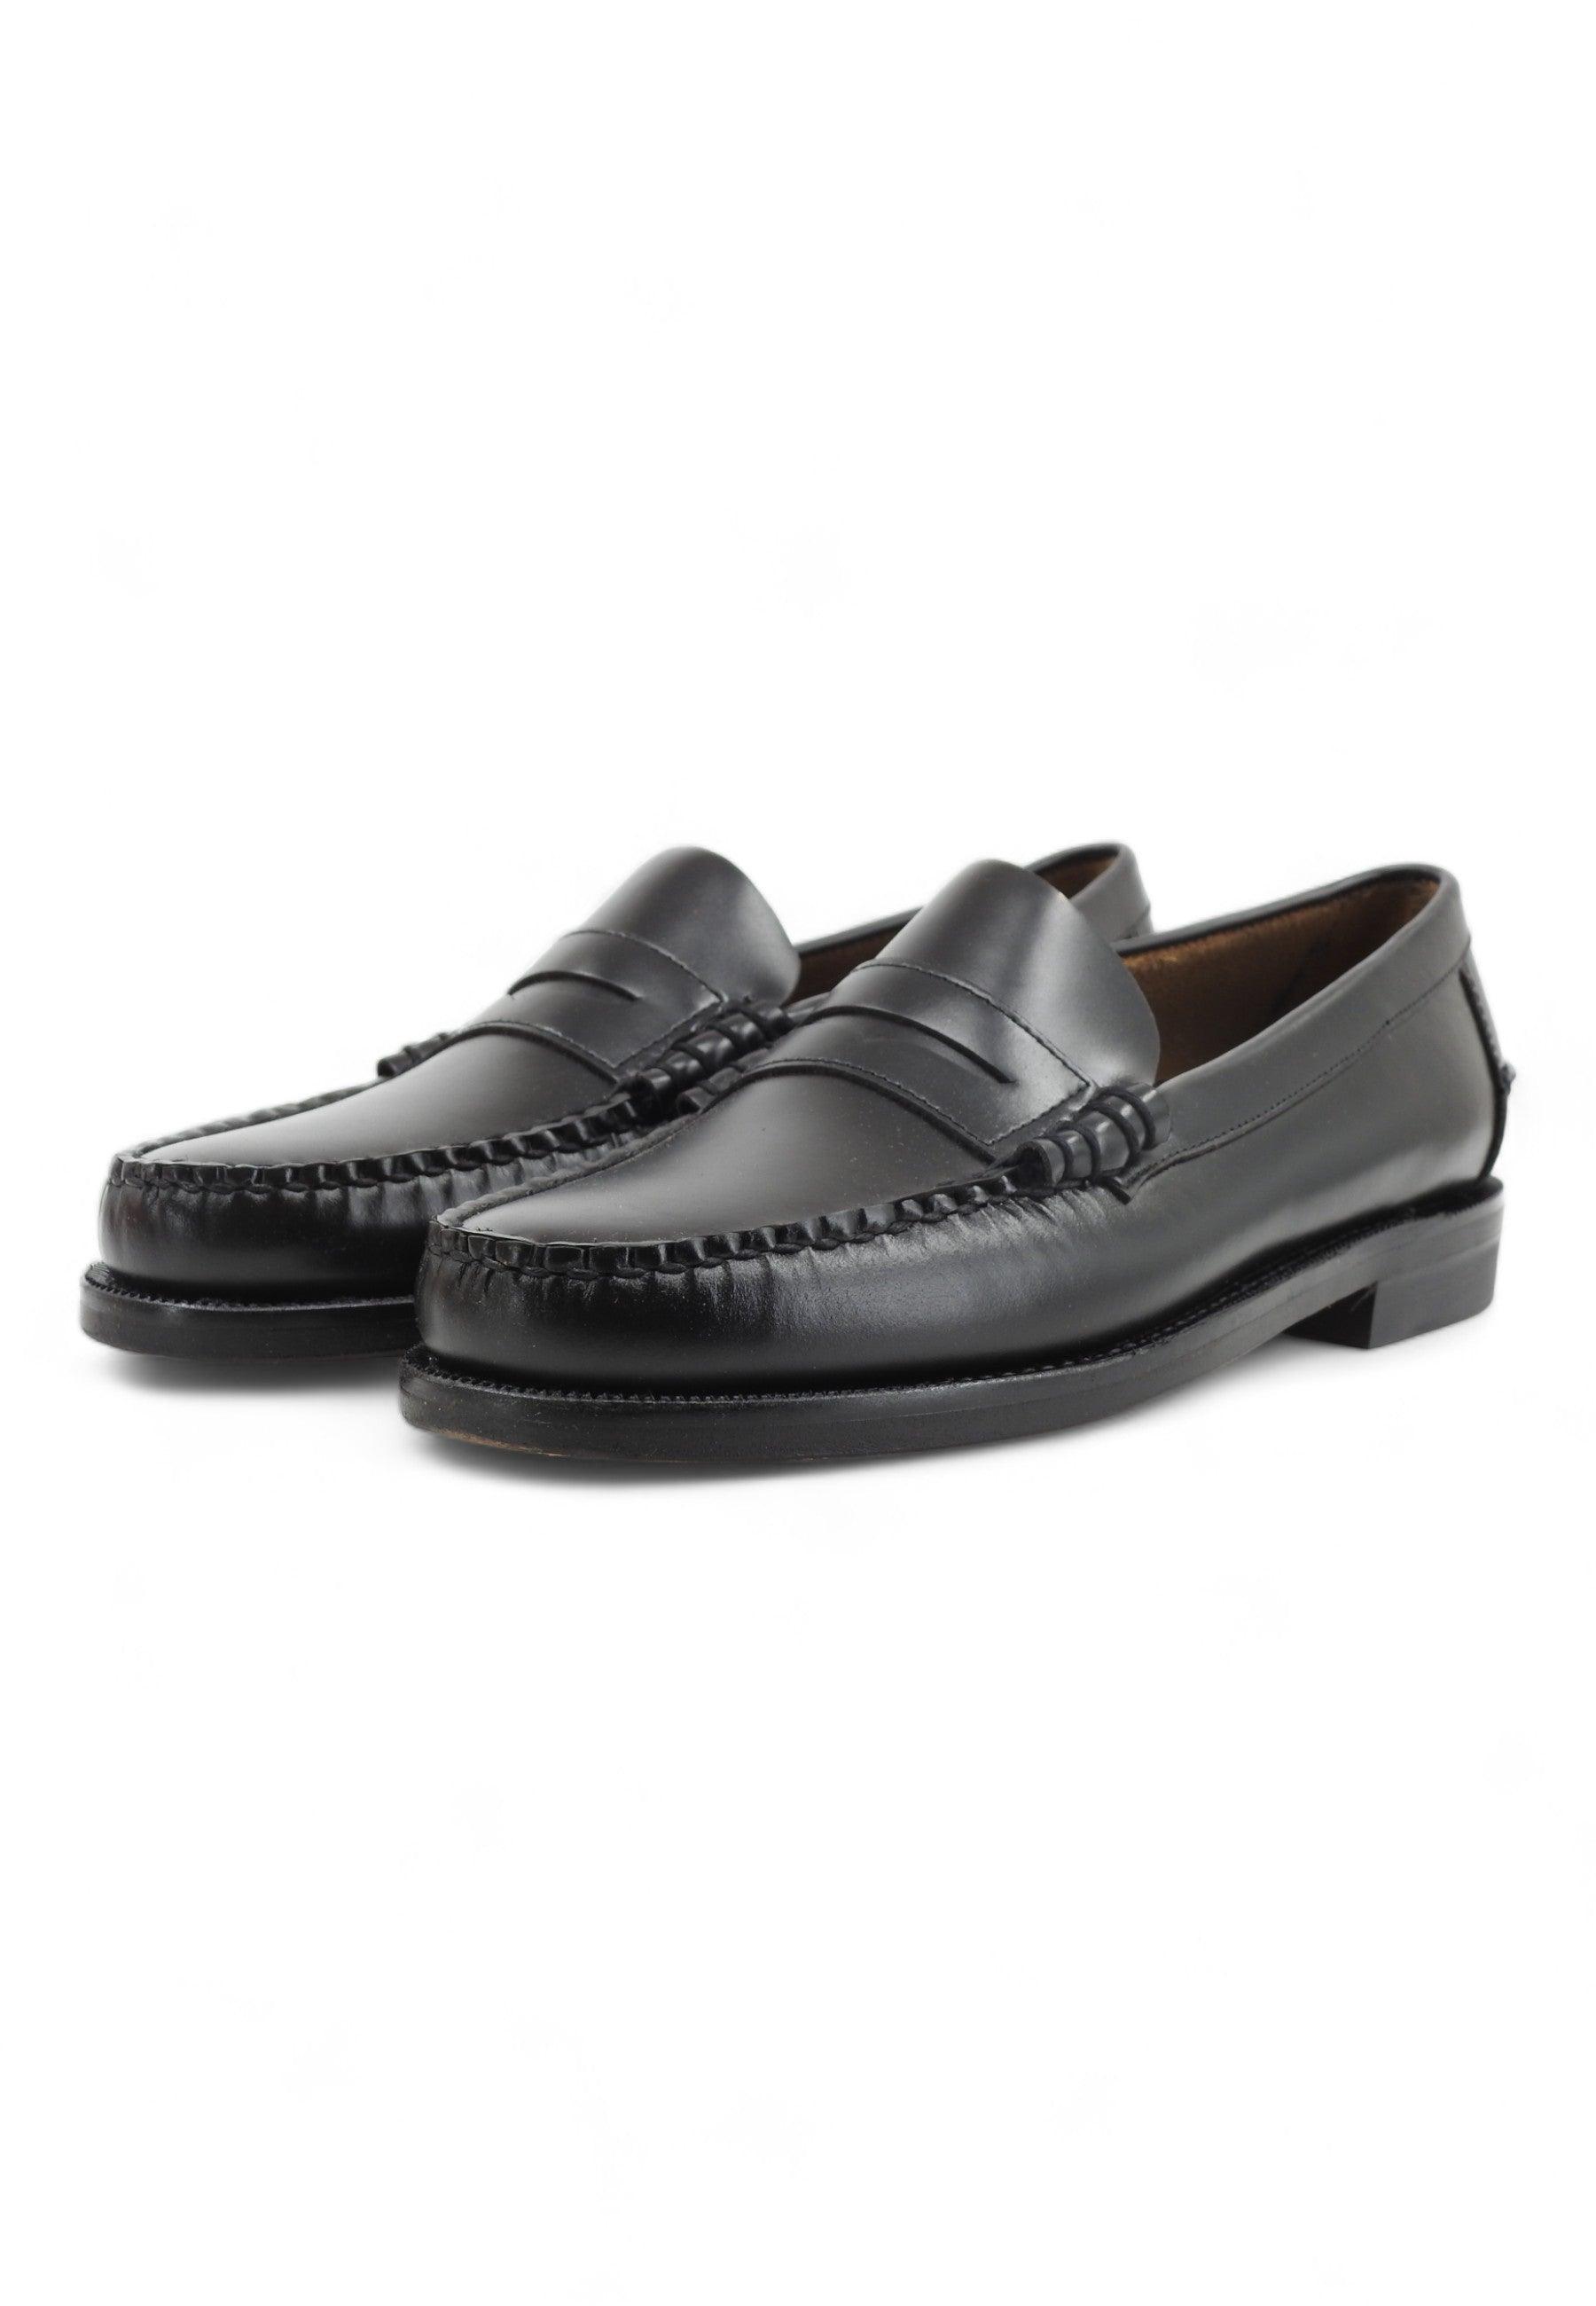 SEBAGO Classic Dan Mocassino Uomo Black 7000300-902 - Sandrini Calzature e Abbigliamento